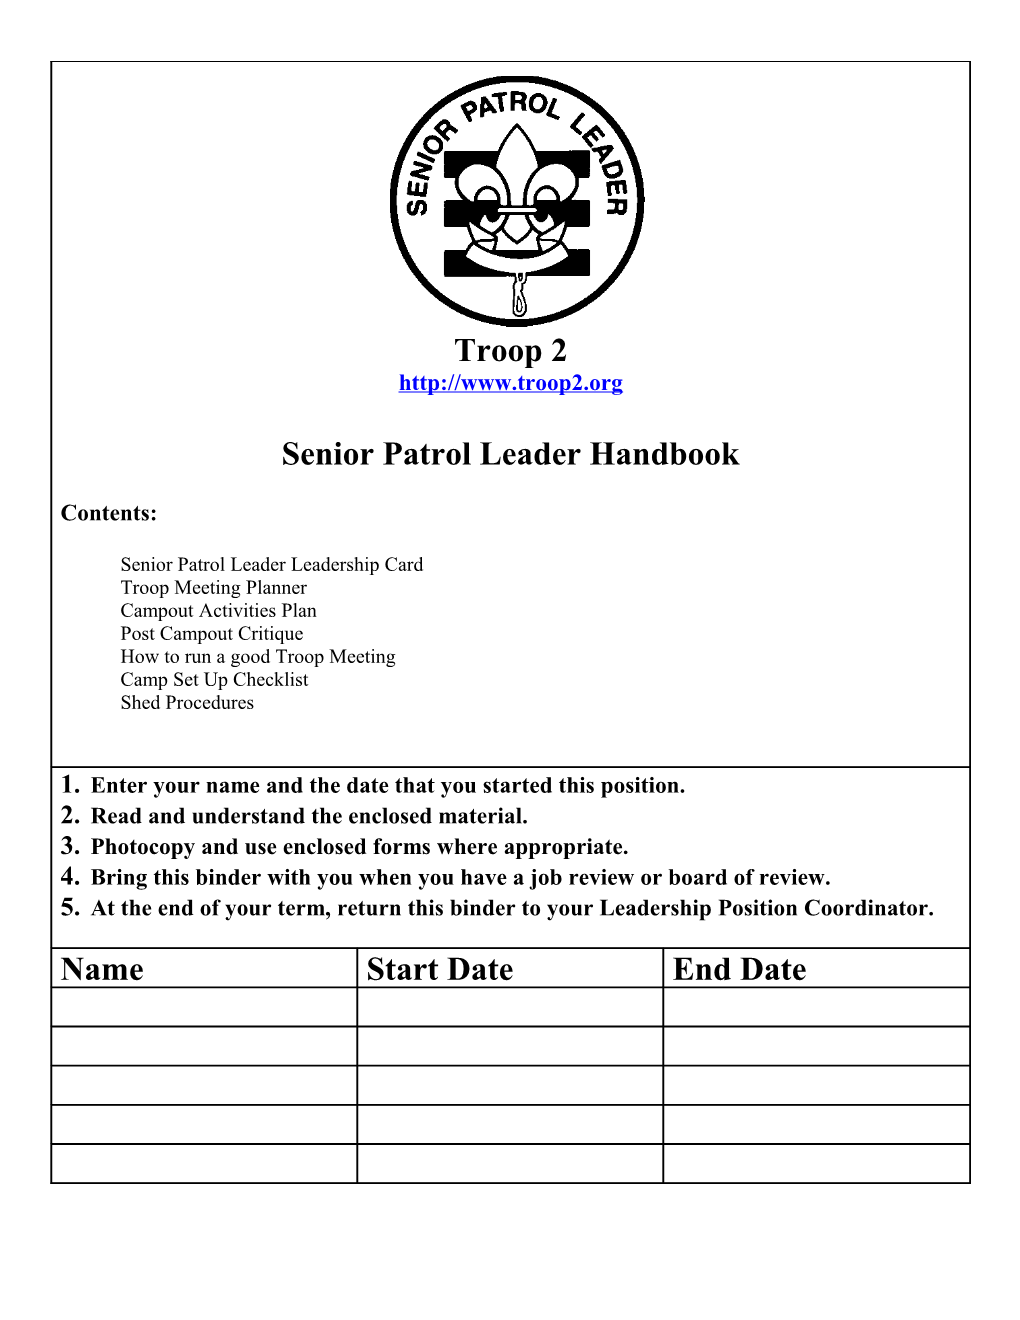 Senior Patrol Leader Handbook